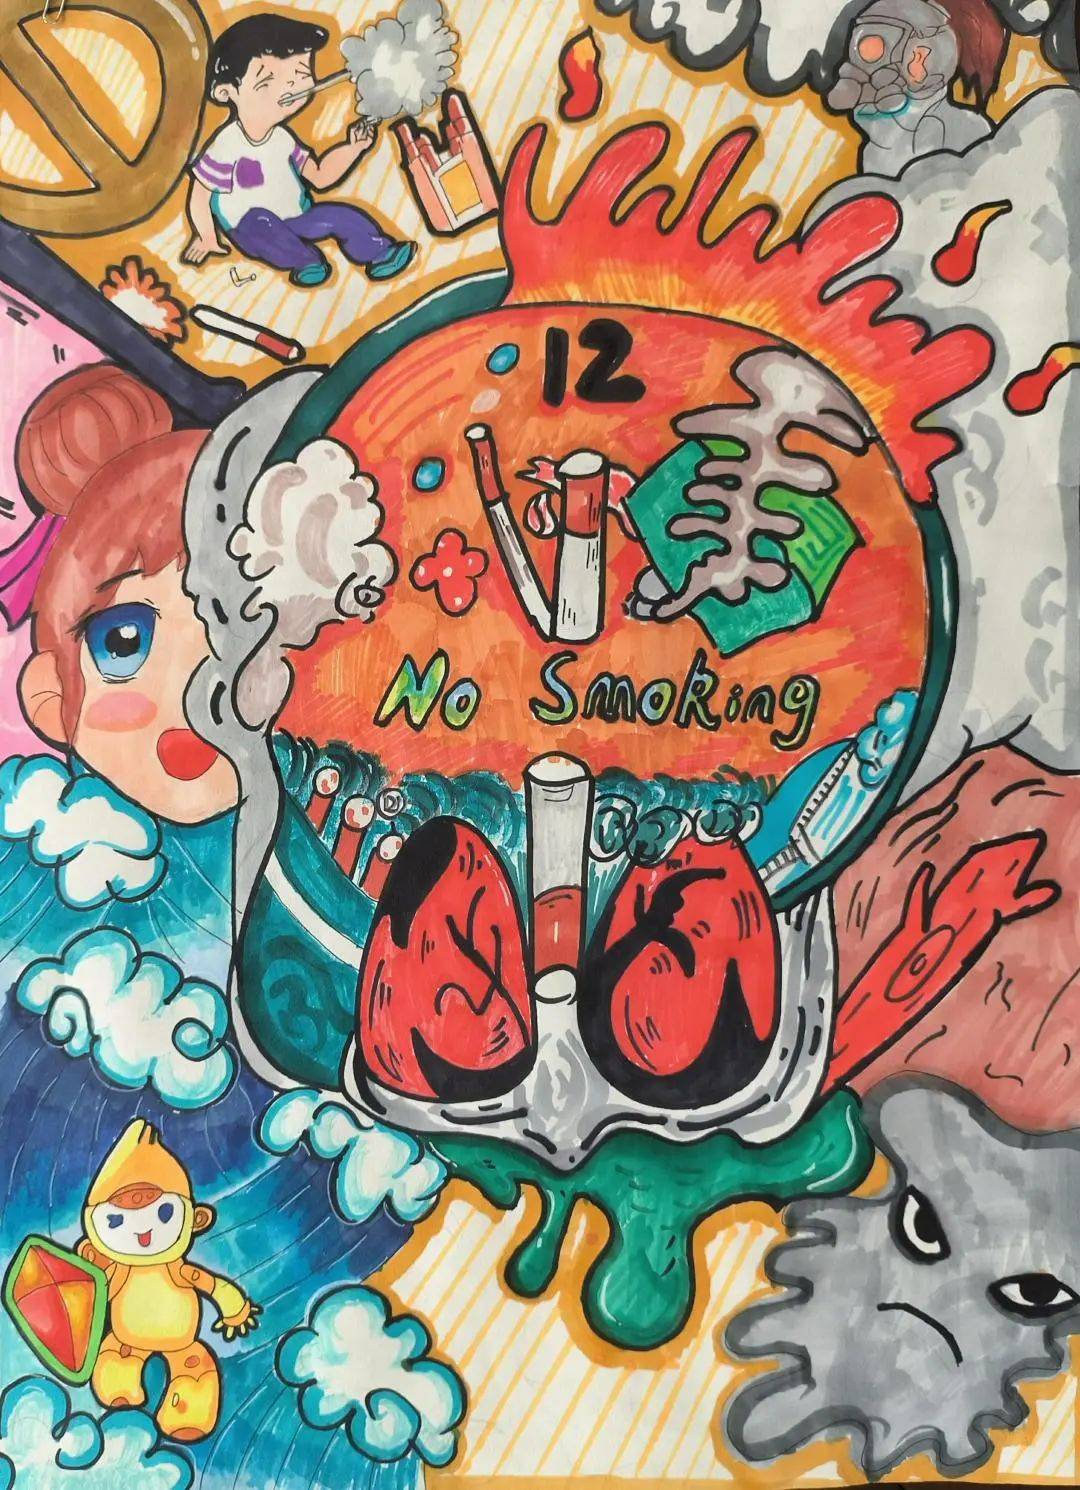 【健康金昌】绘少年力量,画无烟未来青少年控烟绘画大赛中学组作品